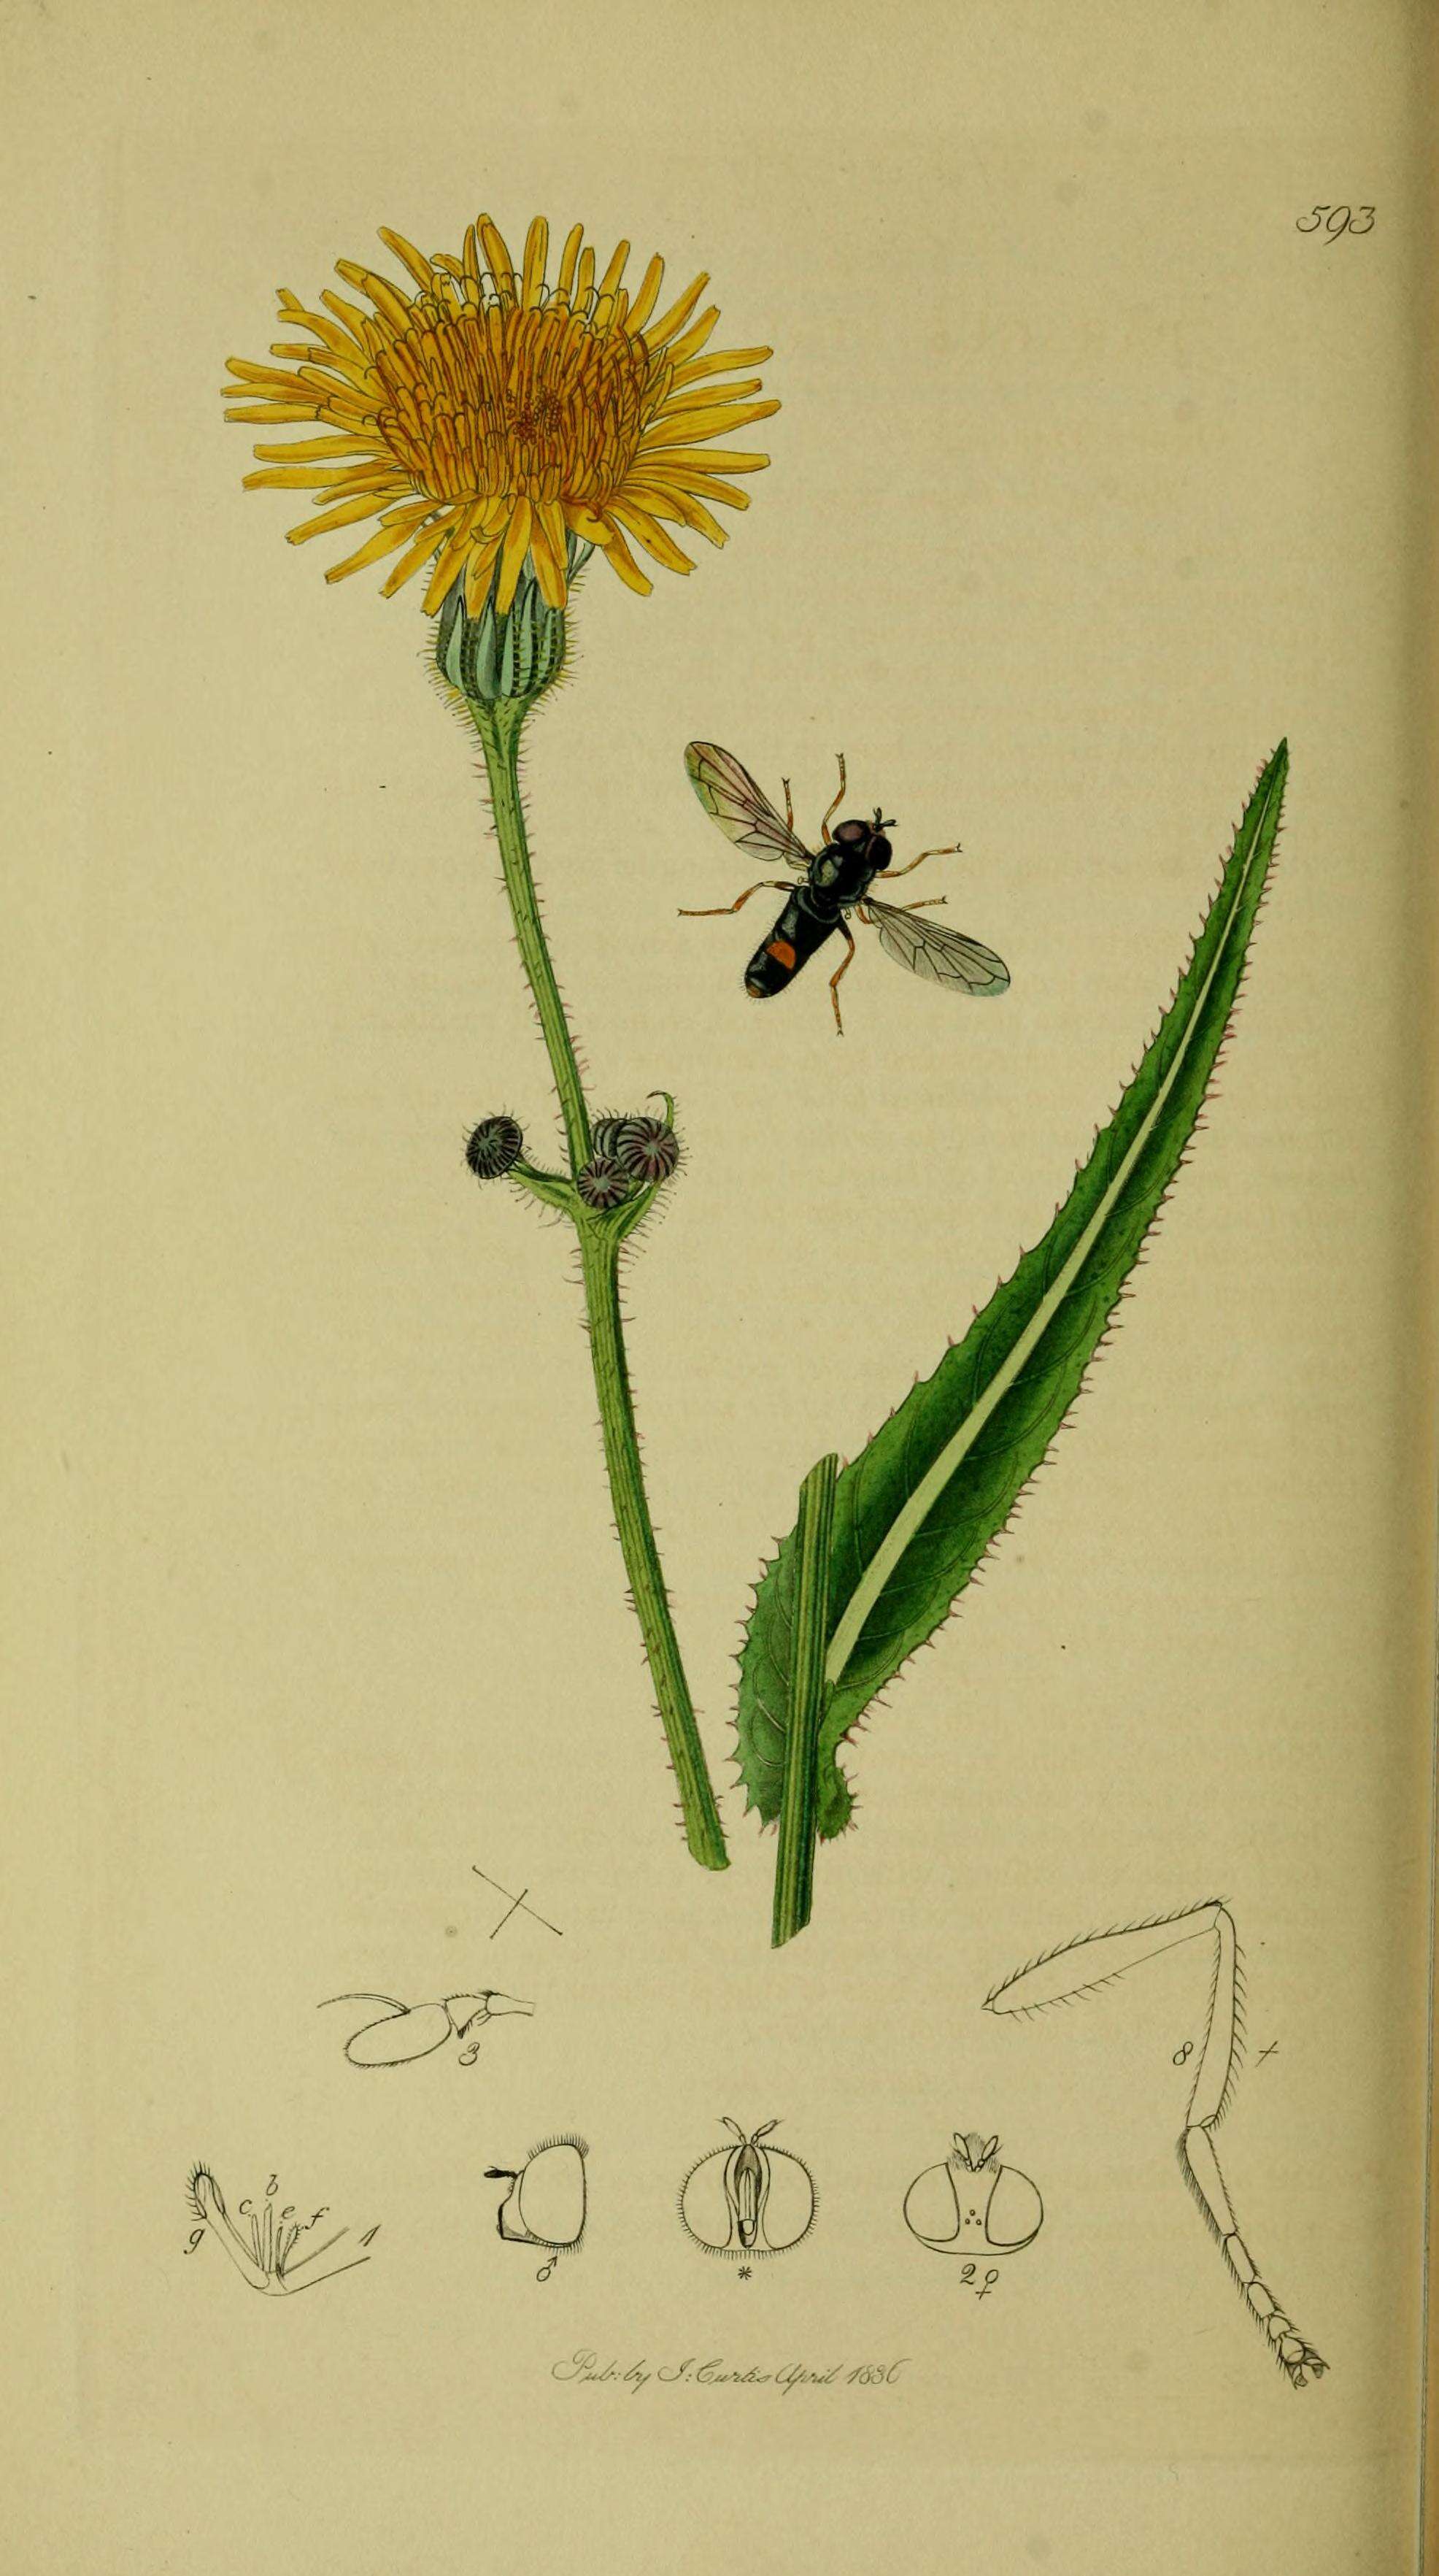 Image of Paragus haemorrhous Meigen 1822